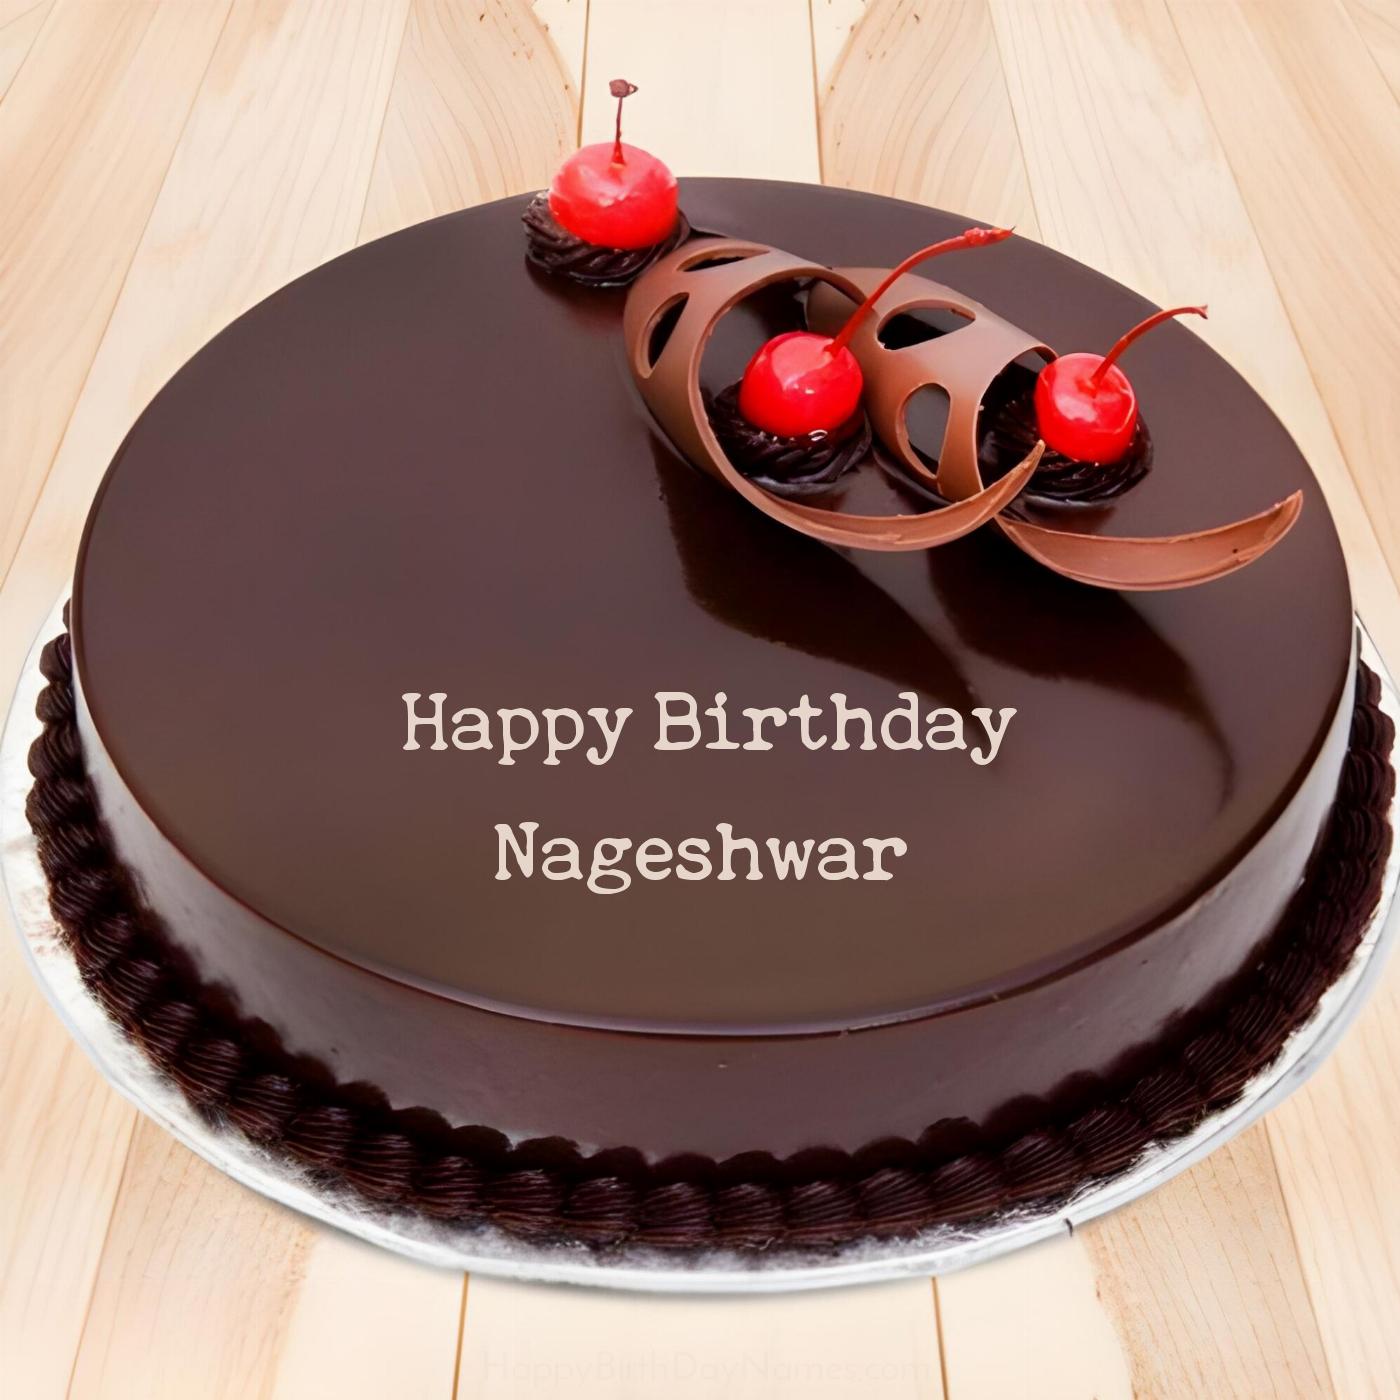 Happy Birthday Nageshwar Chocolate Cherry Cake